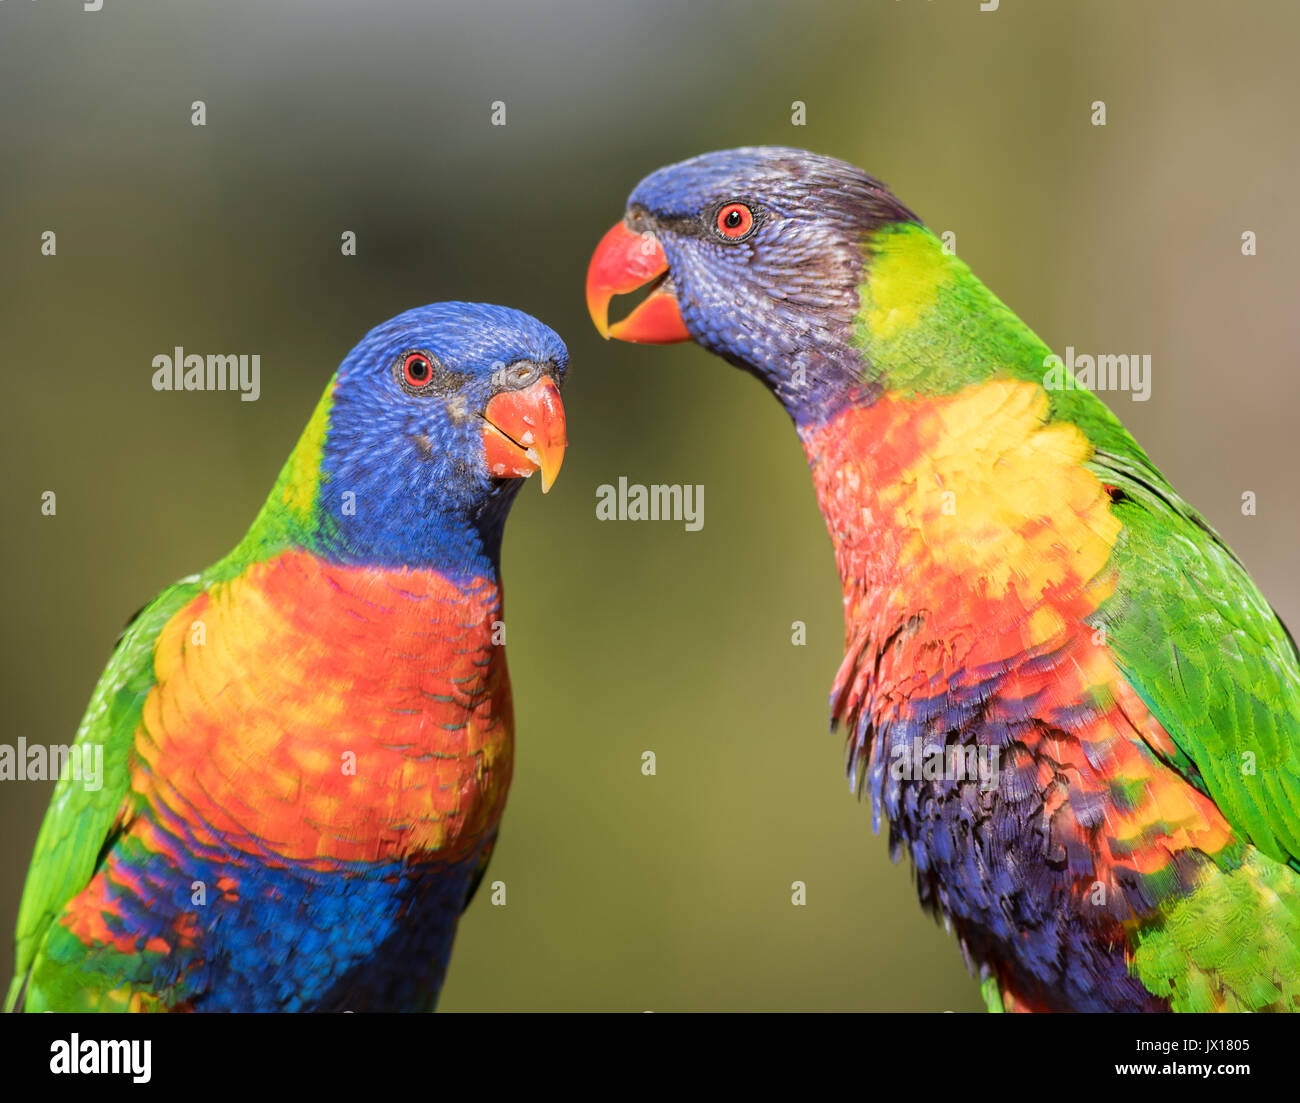 Rainbow loriquets verts peuvent être trouvés à travers l'Australie, ces oiseaux sont très vivement colorées apprivoiser et peut être trouvé sur divers Australian les étiquettes des produits. Banque D'Images